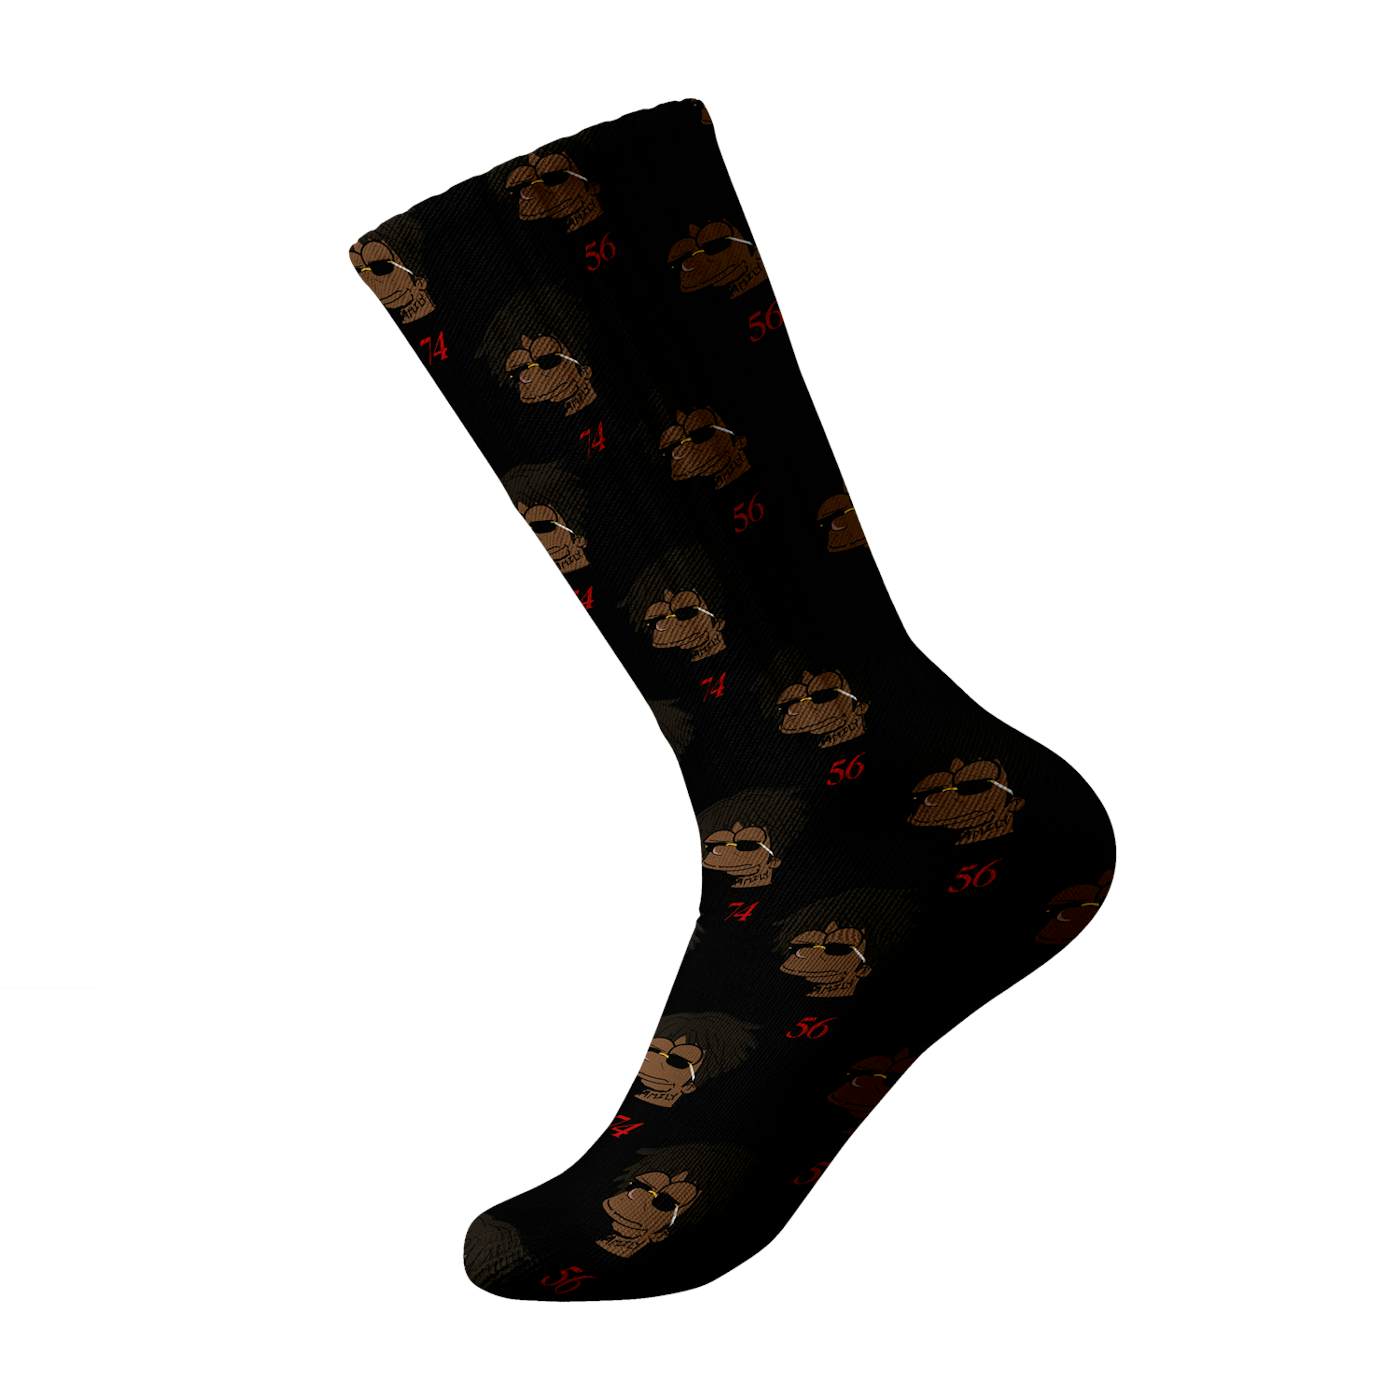 Cash Kidd - Black 5674 Simpsons Socks